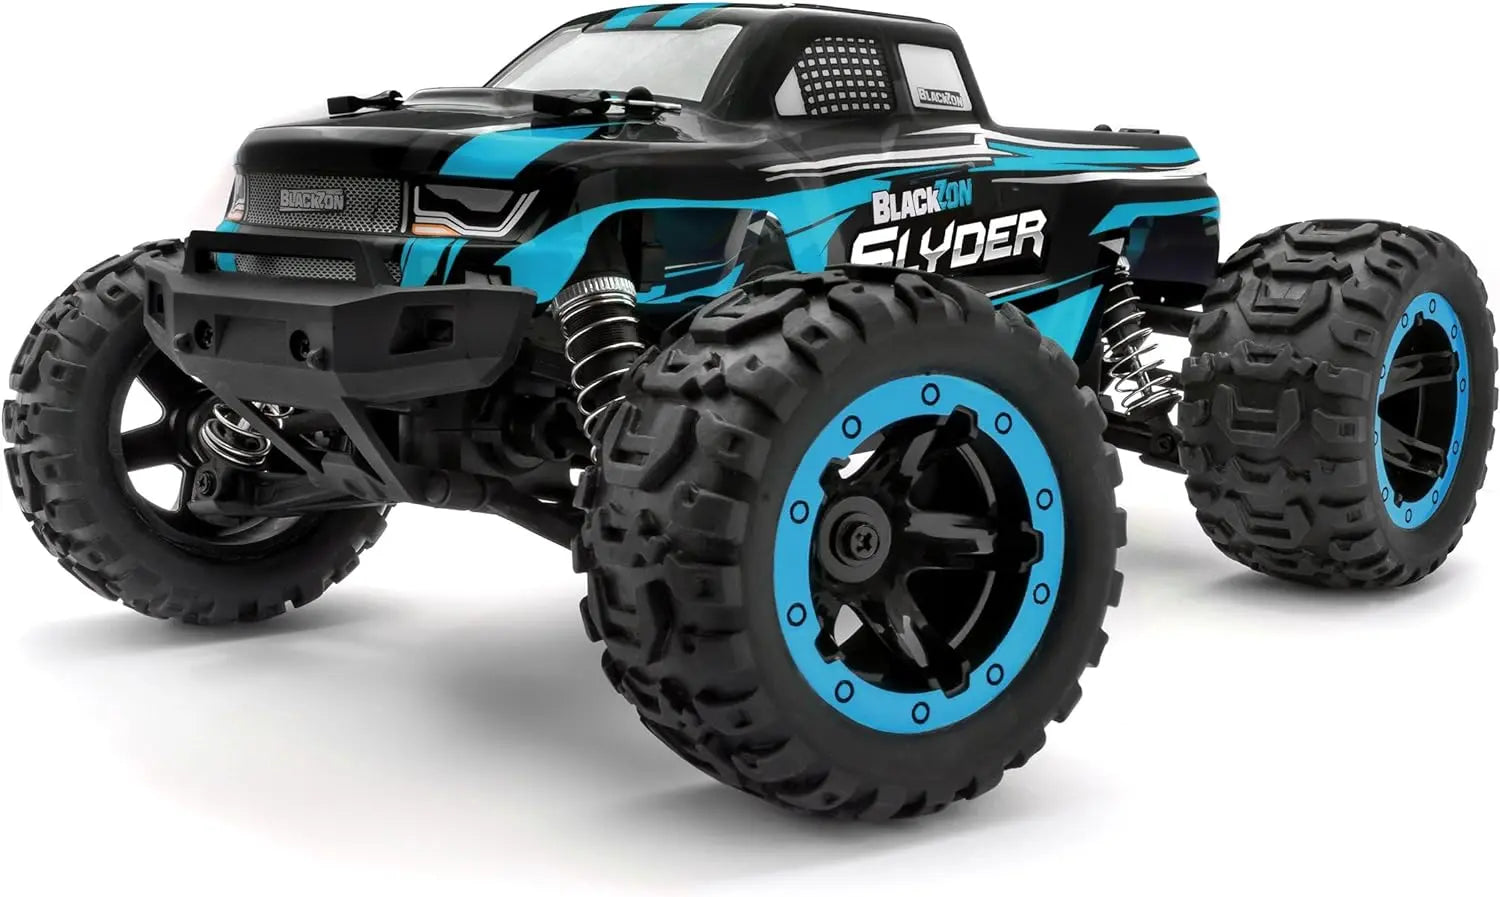 jouet pour enfant Monster Truck télécommandé 4WD Blackzon Slyder 1/16 RTR king jouet